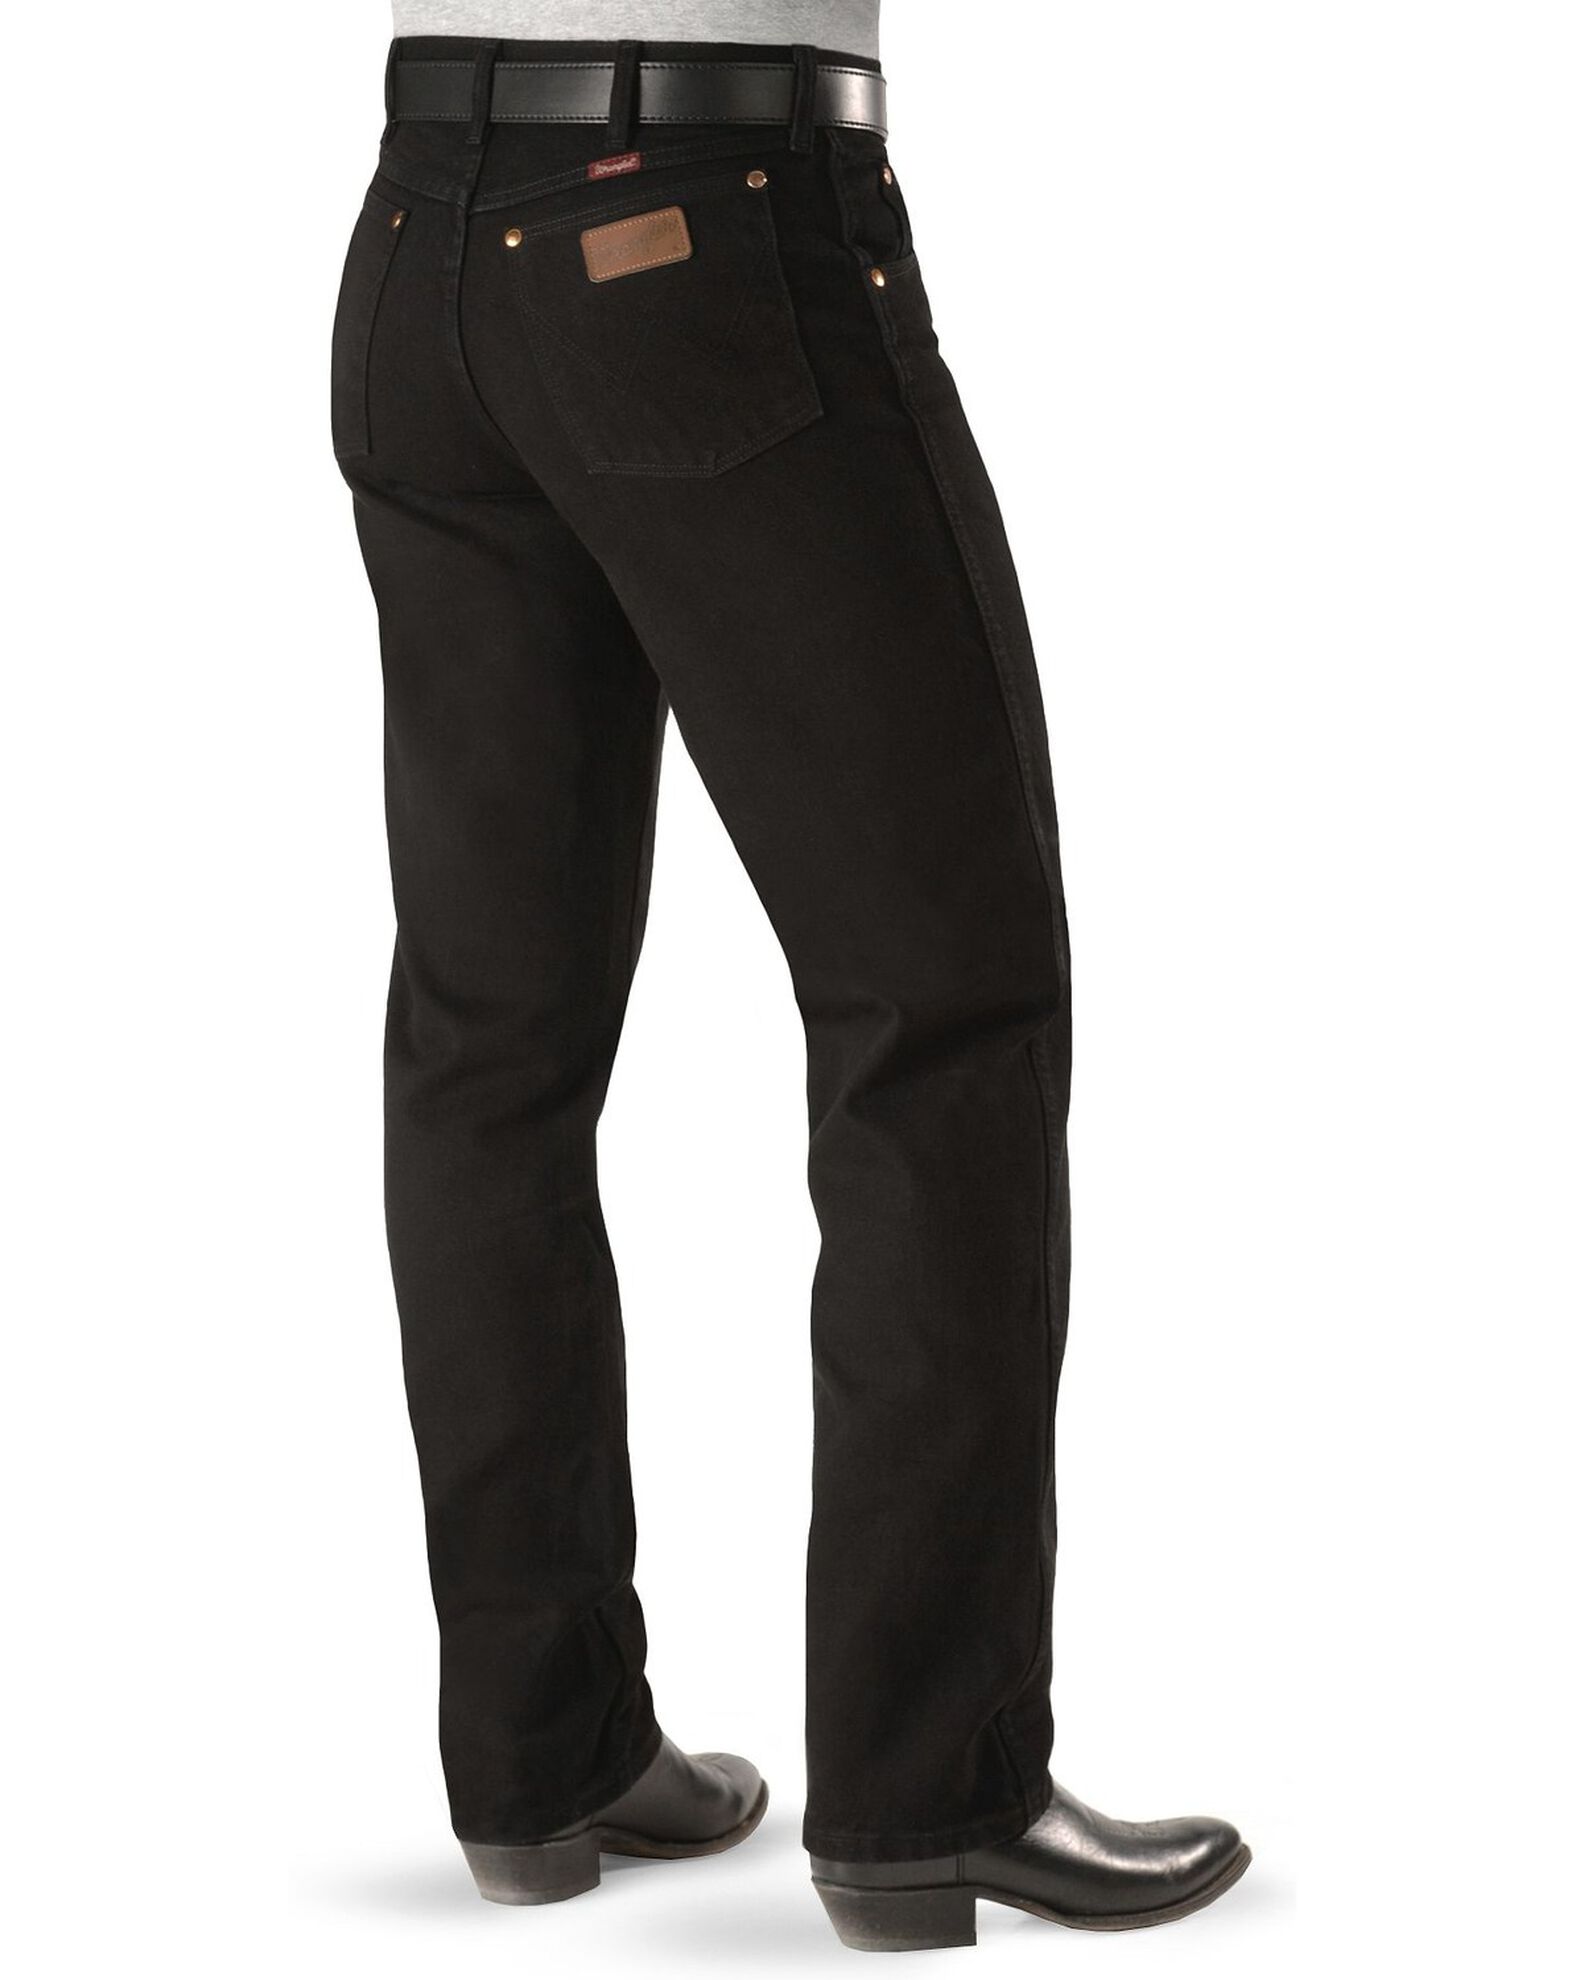 Wrangler Men's Cut Original Fit Jeans | Boot Barn